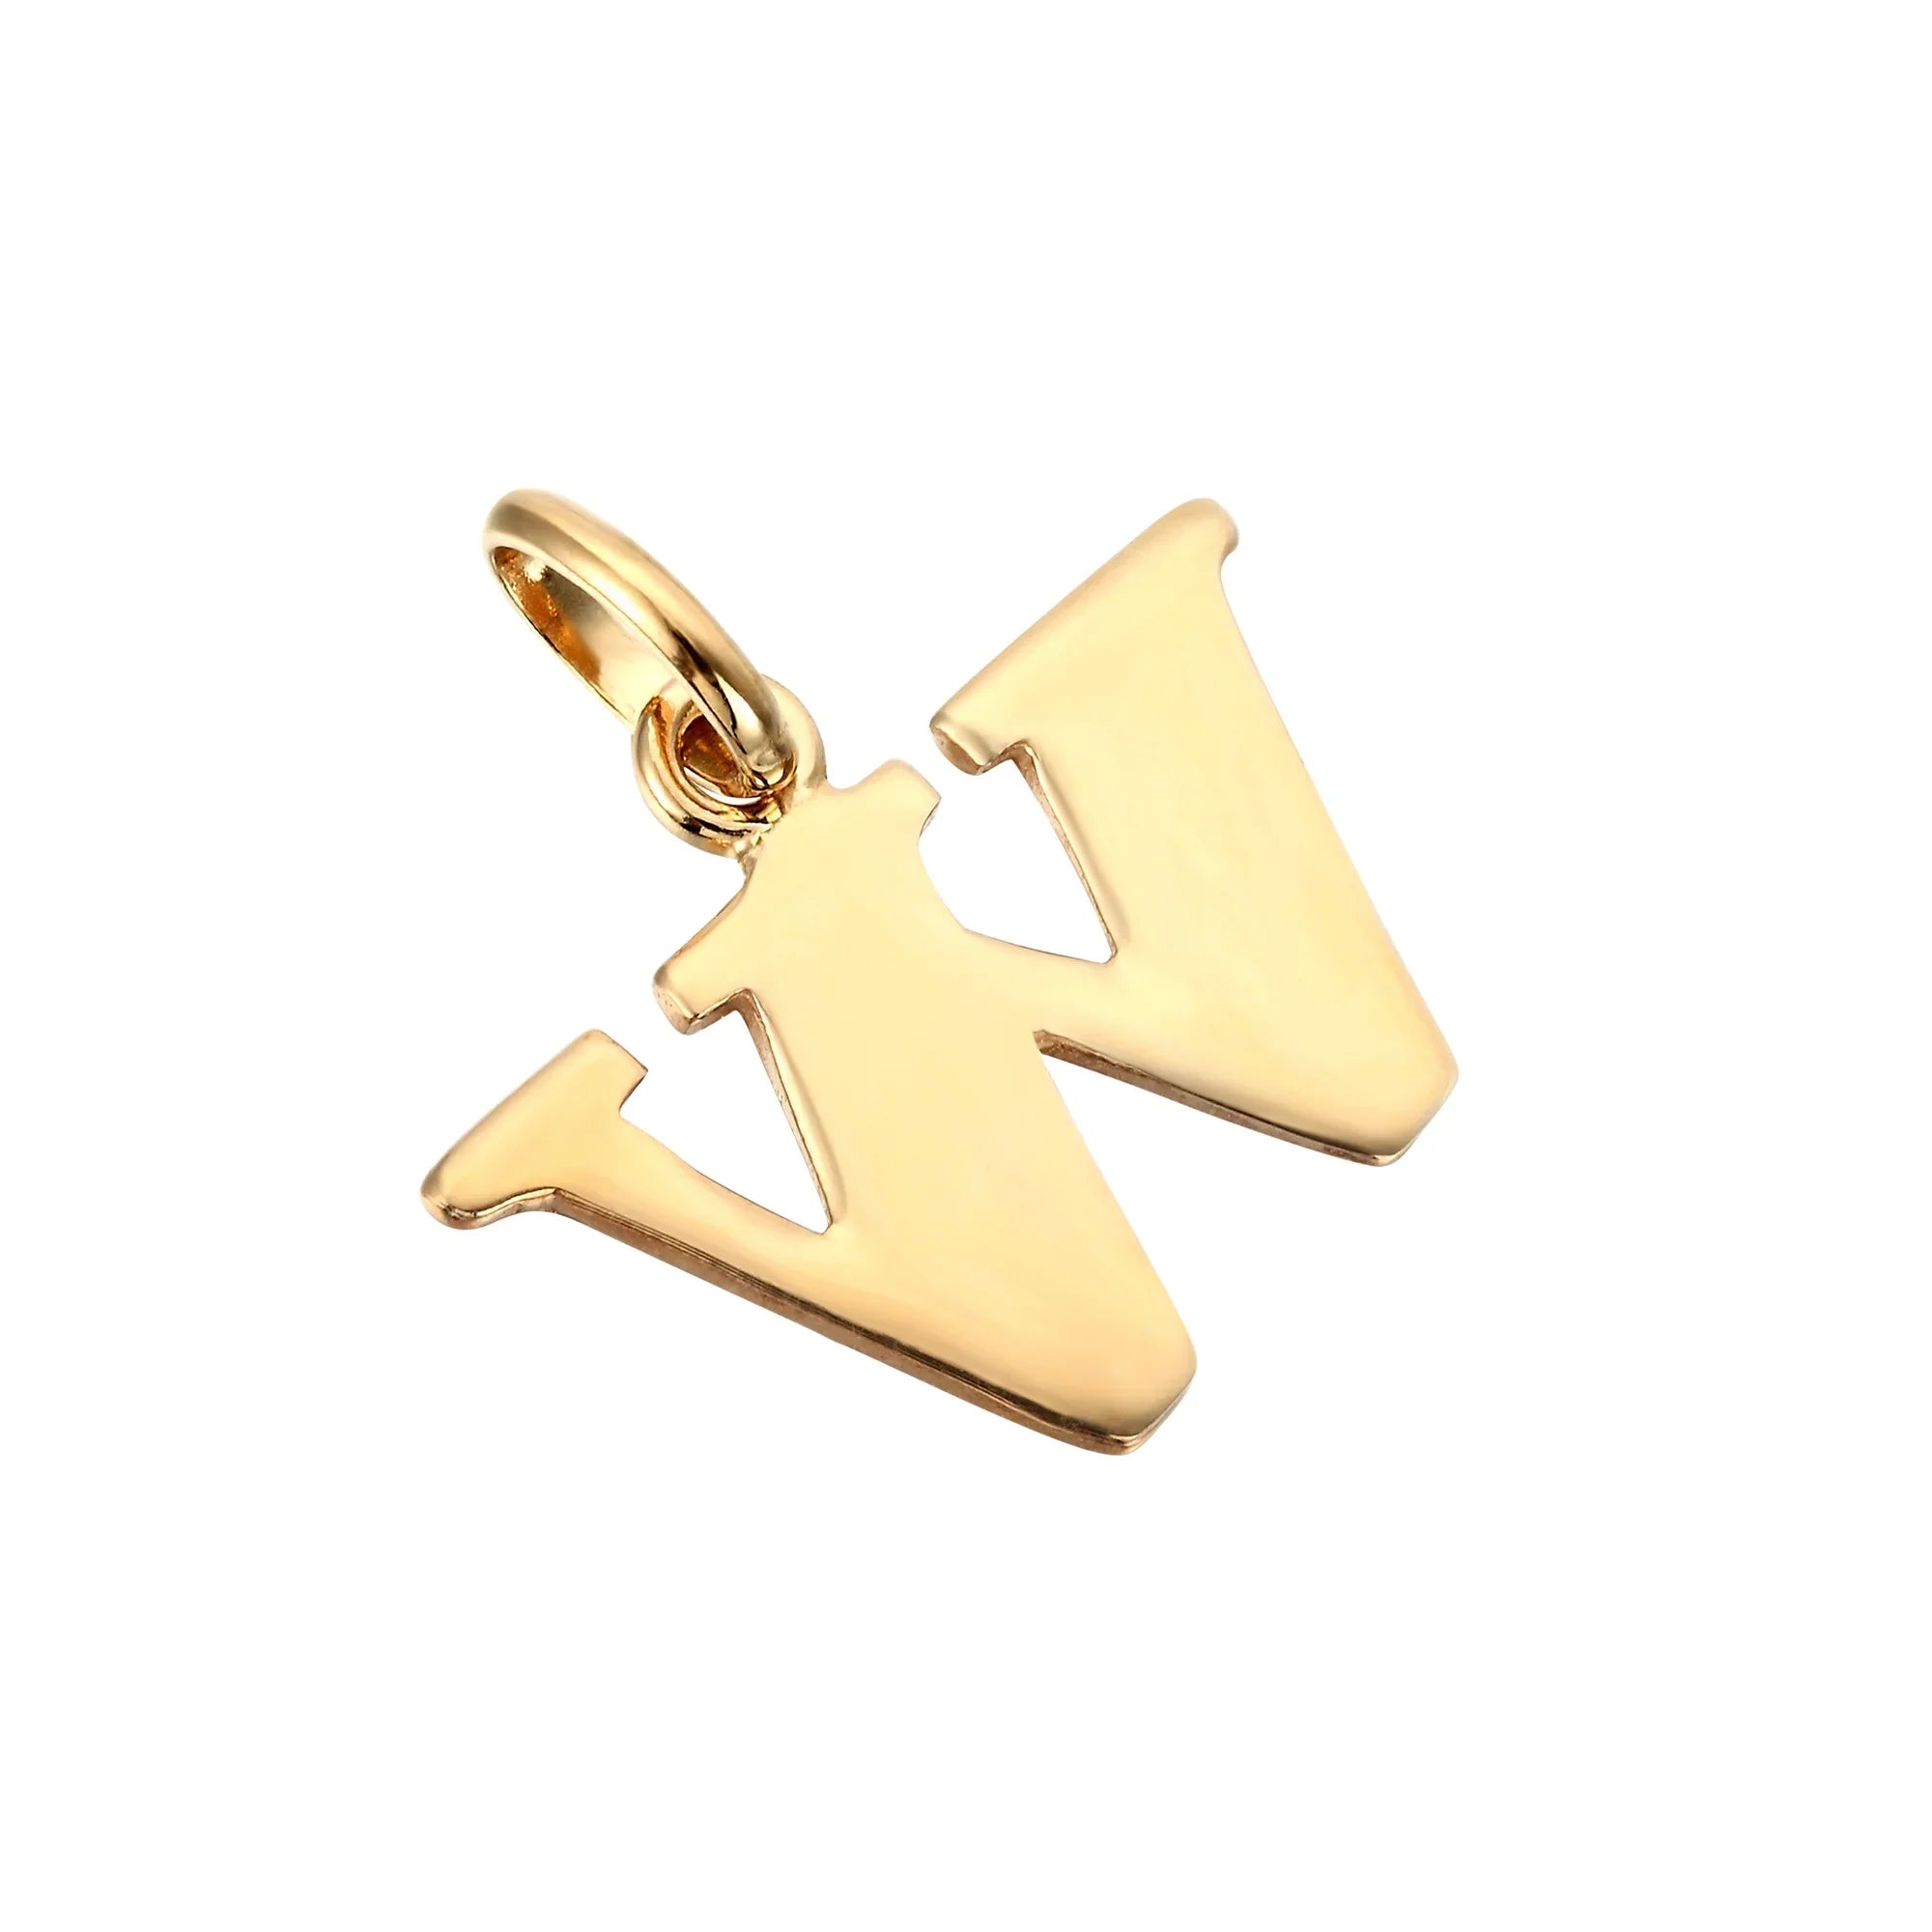 18ct Gold Vermeil Initial Letter Charm Pendant